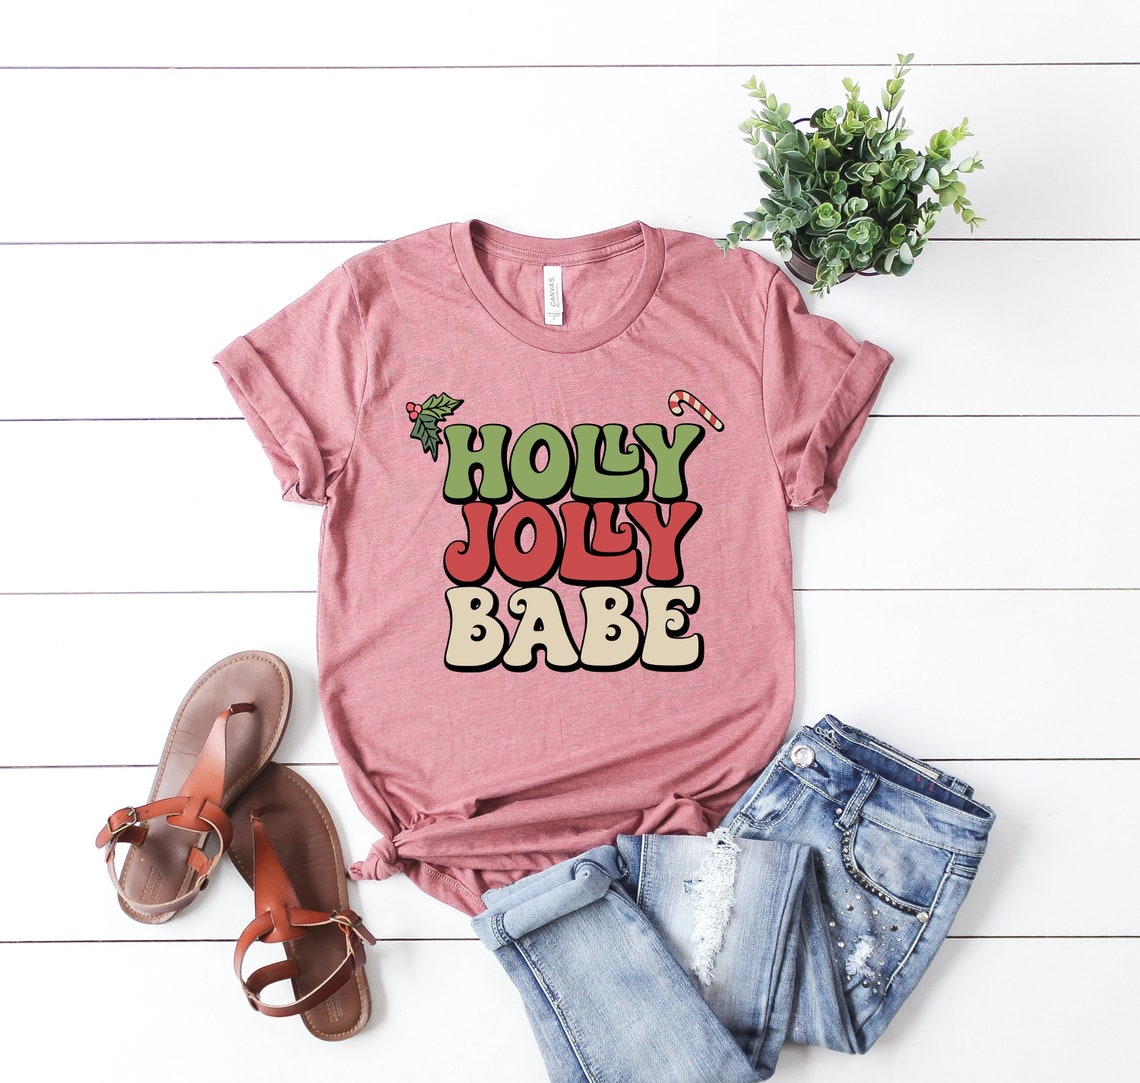 Holly Jolly Babe Shirt, Cute Christmas Shirt, Christmas Shirt, Xmas Tshirt, Santa Vibes, Iprintasty Christmas, Holiday Apparel